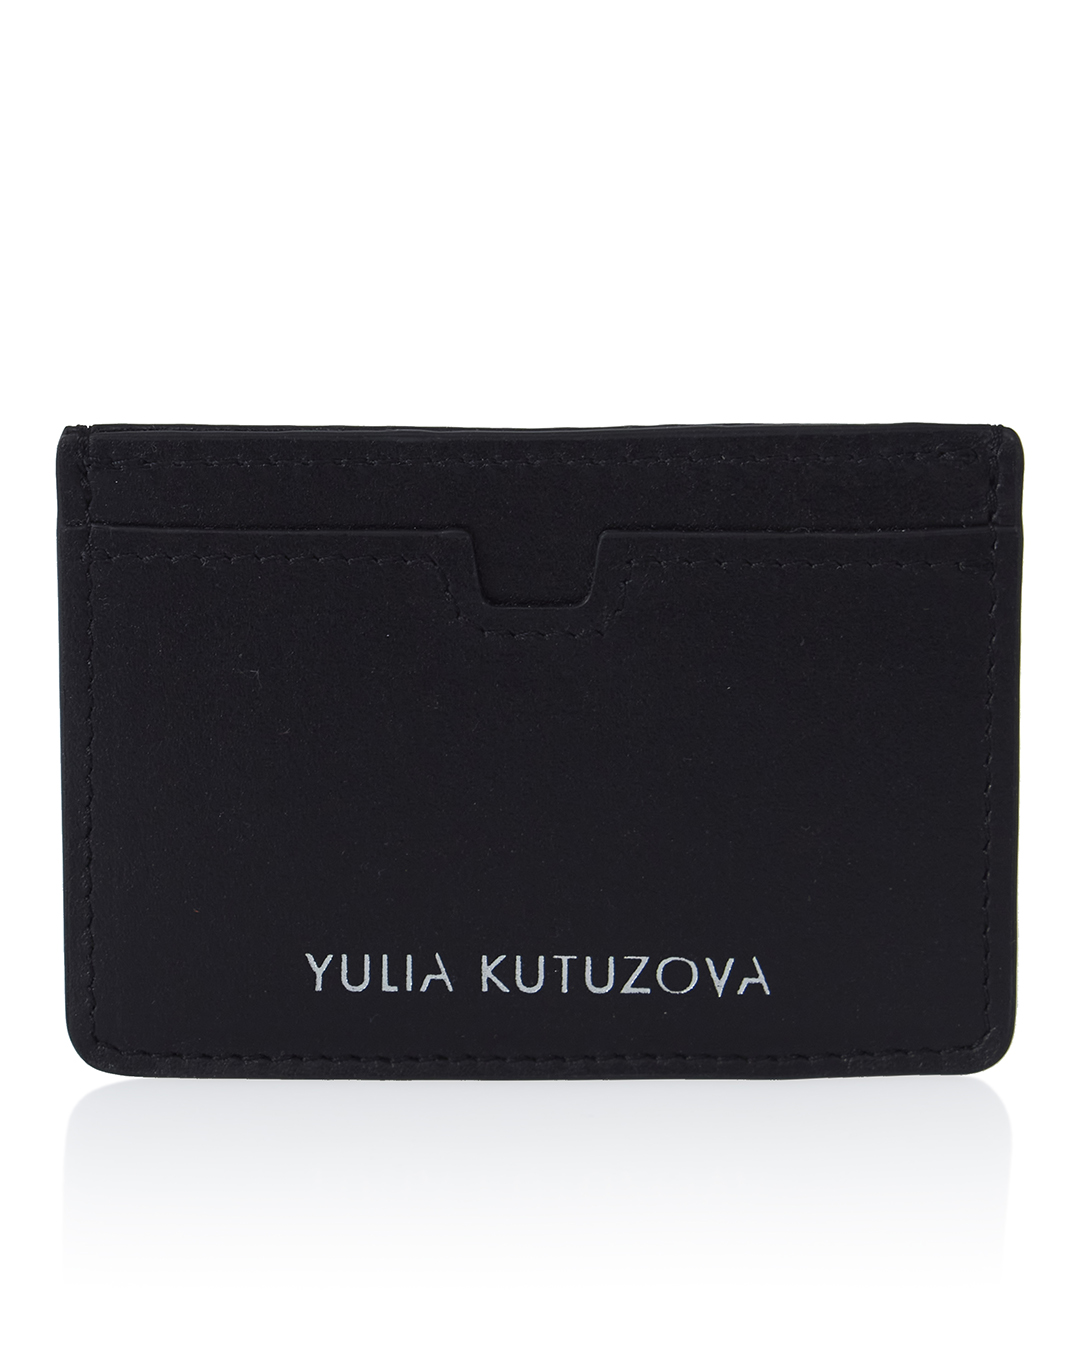 YULIA KUTUZOVA  артикул BLACK22 марки YULIA KUTUZOVA купить за 4600 руб.